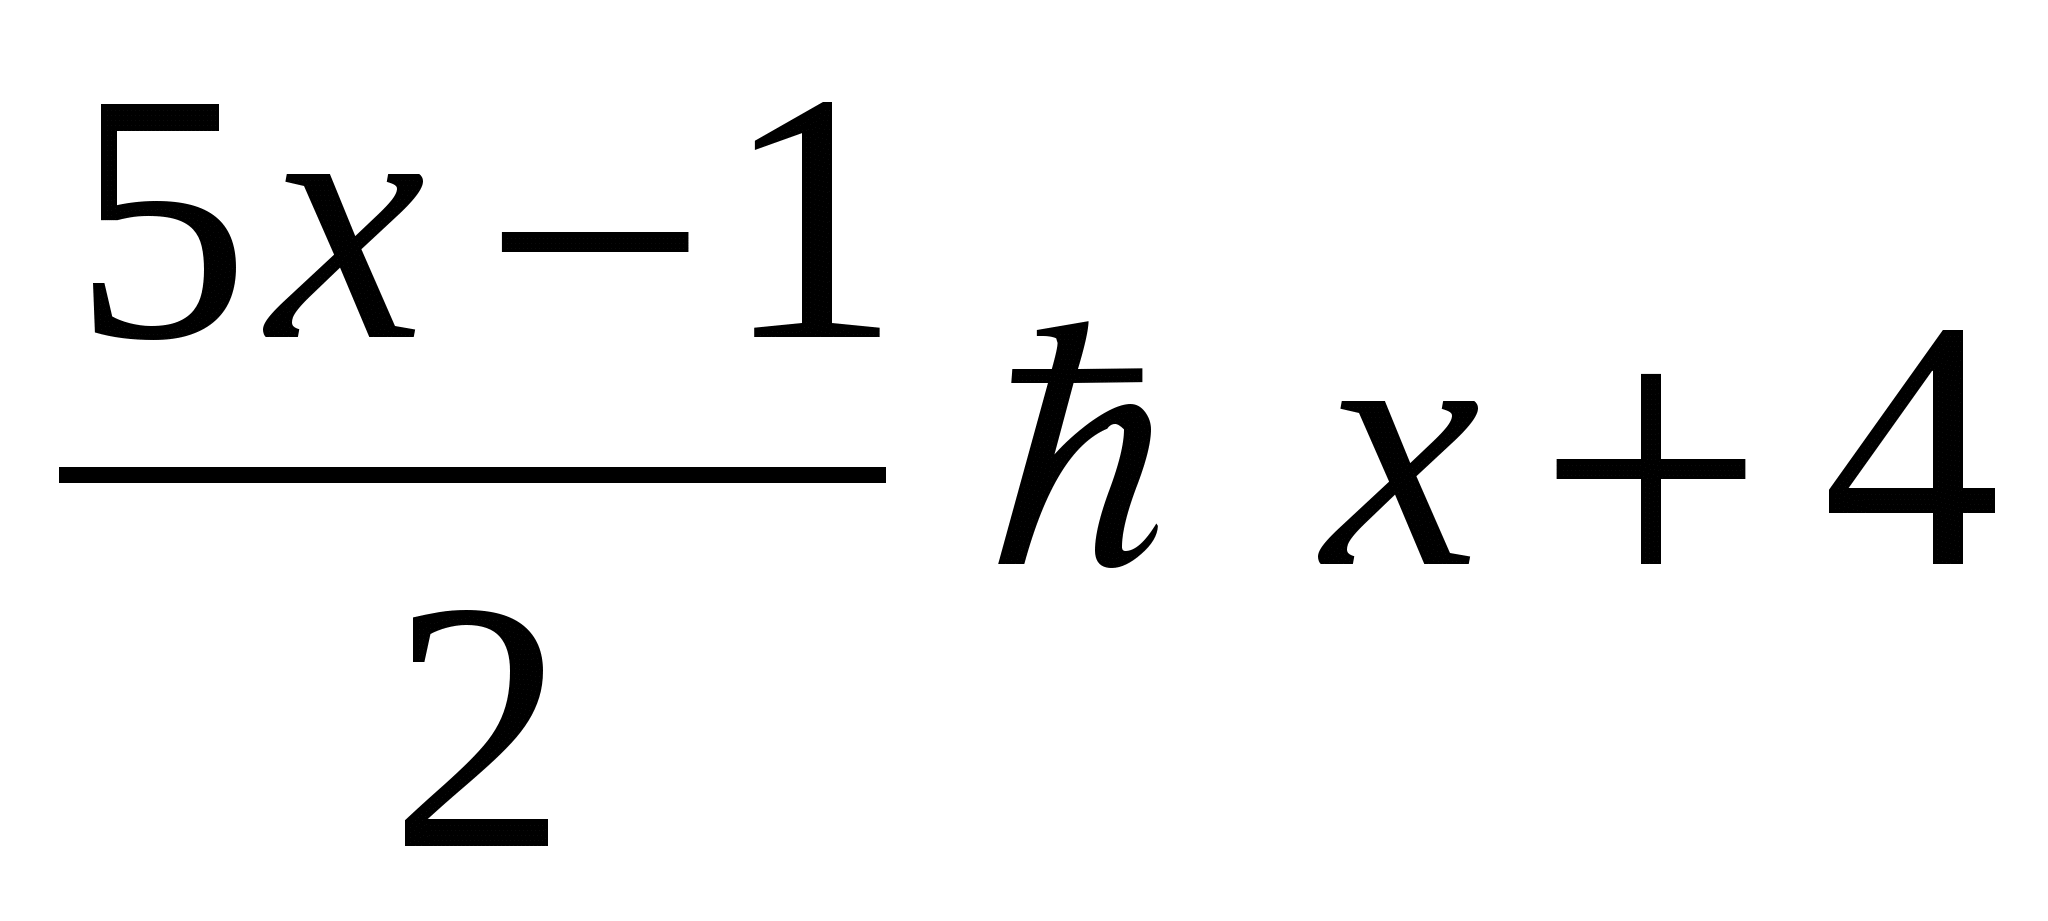 Урок по математике 6 класс по теме Решение линейных неравенств